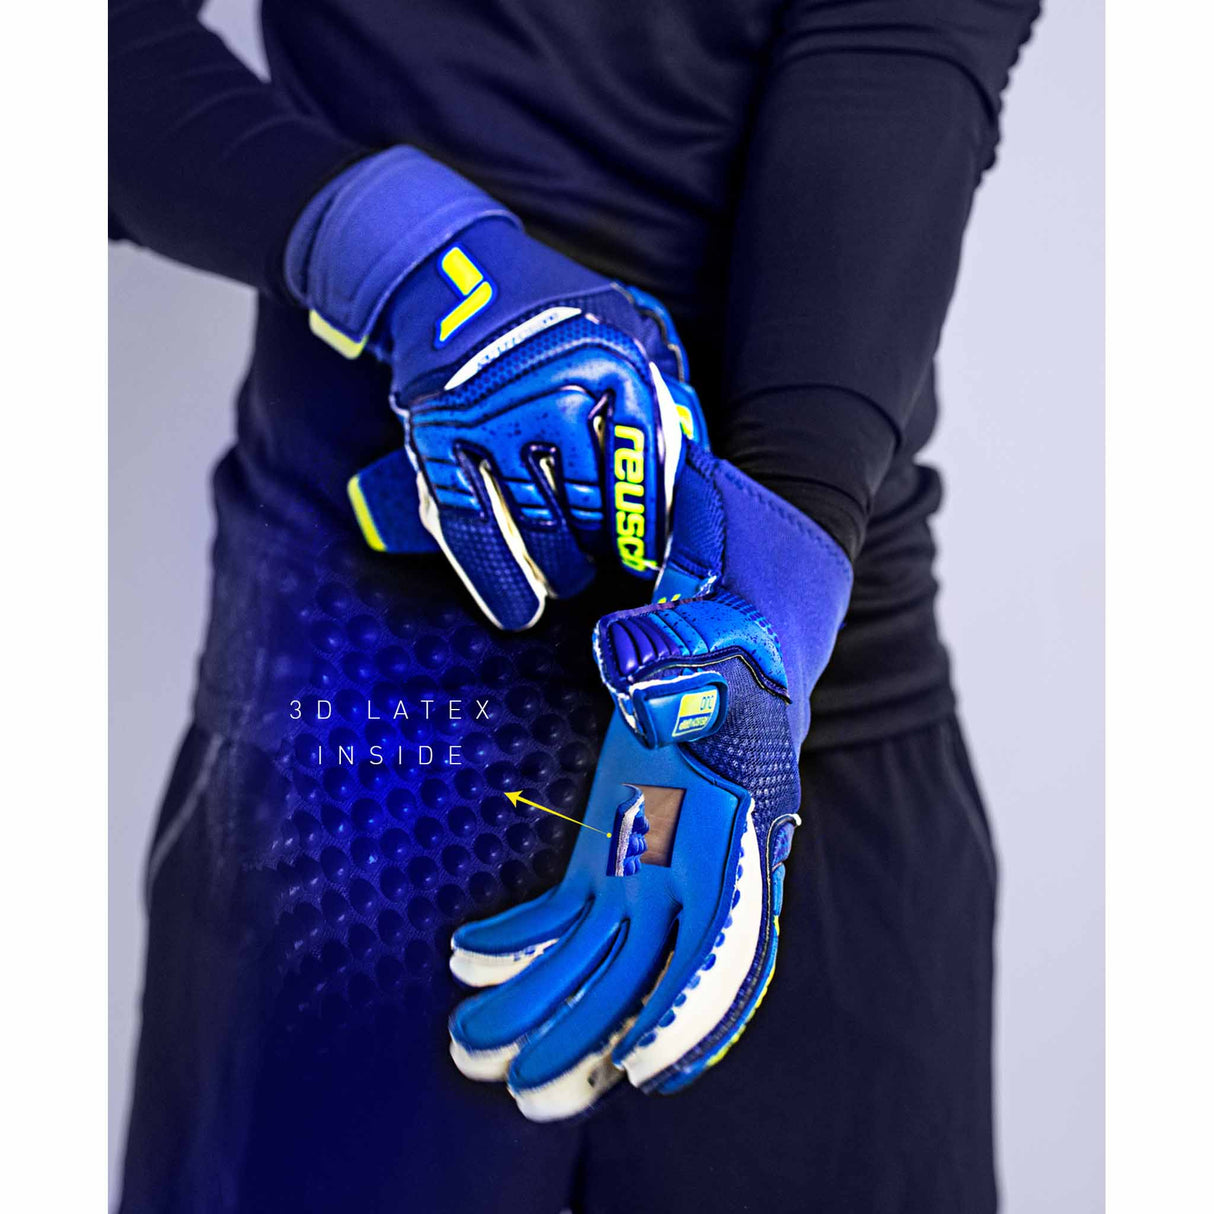 Reusch Attrakt Duo gants de gardien de soccer - Bleu / Vert